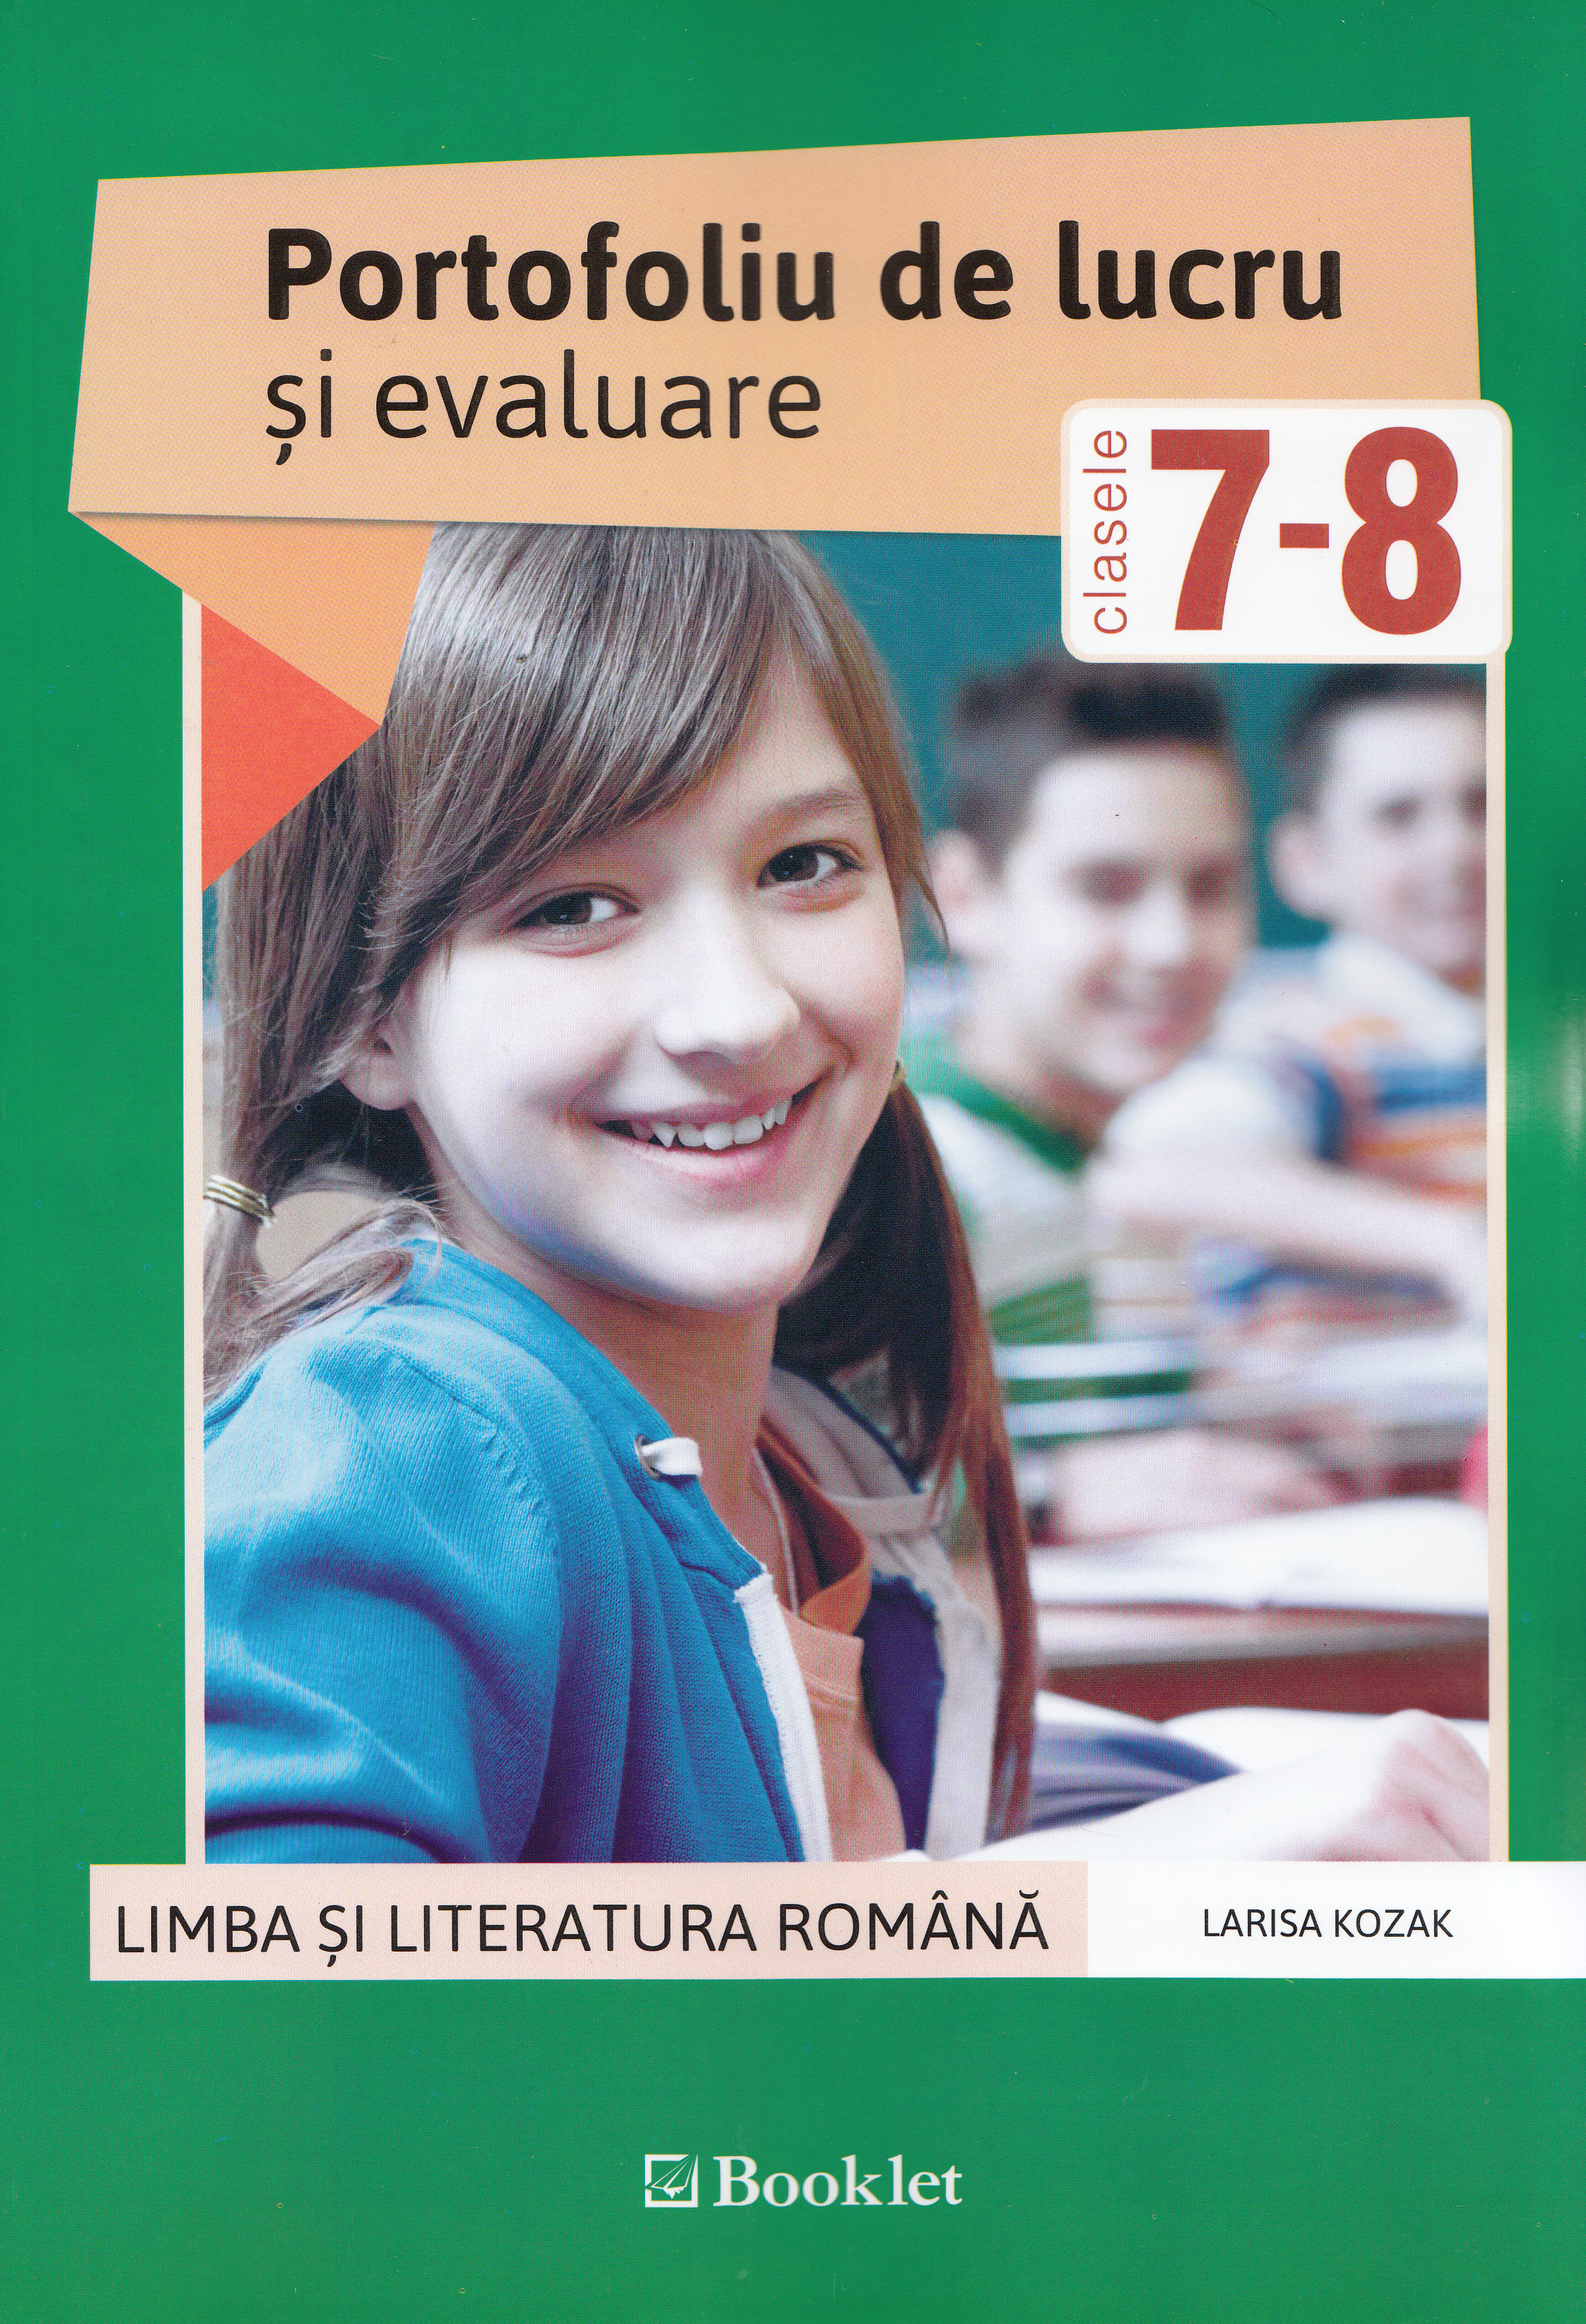 Romana - Clasele 7-8 - Portofoliu de lucru si evaluare - Larisa Kozak